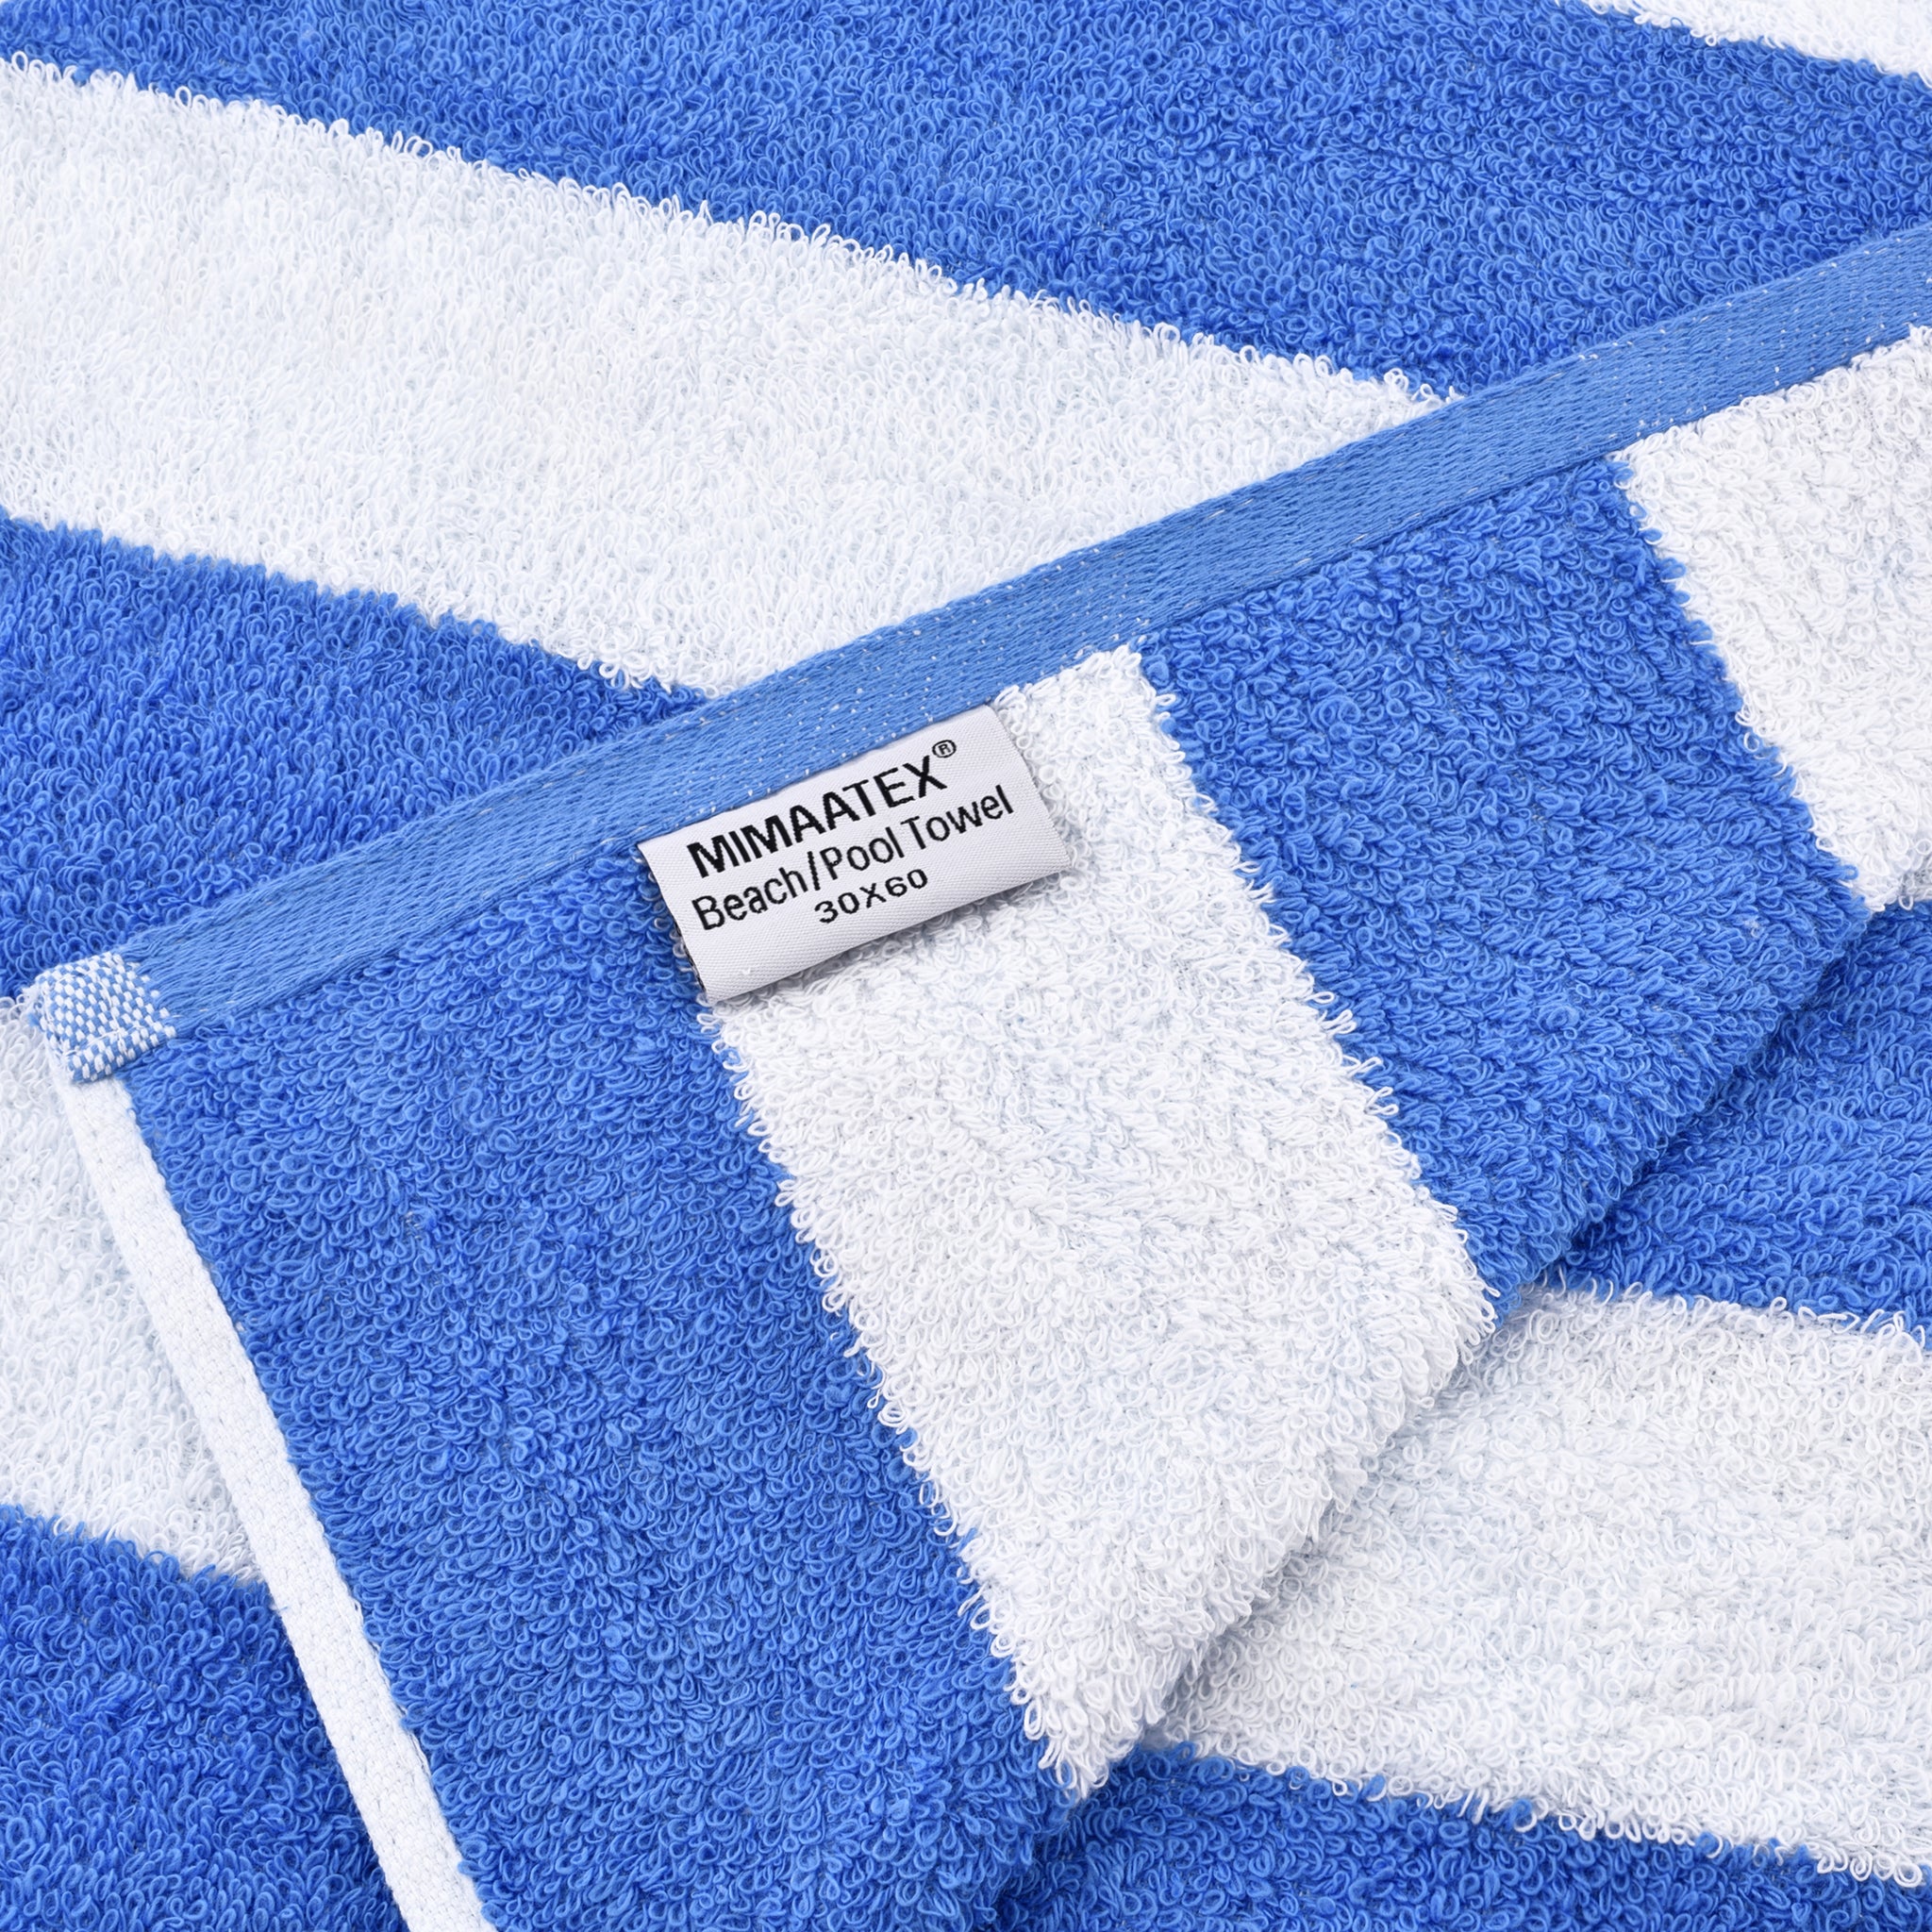 MIMAATEX Pool/Beach Cabana Towel Set - Pack of 4 pieces - 30”x 60